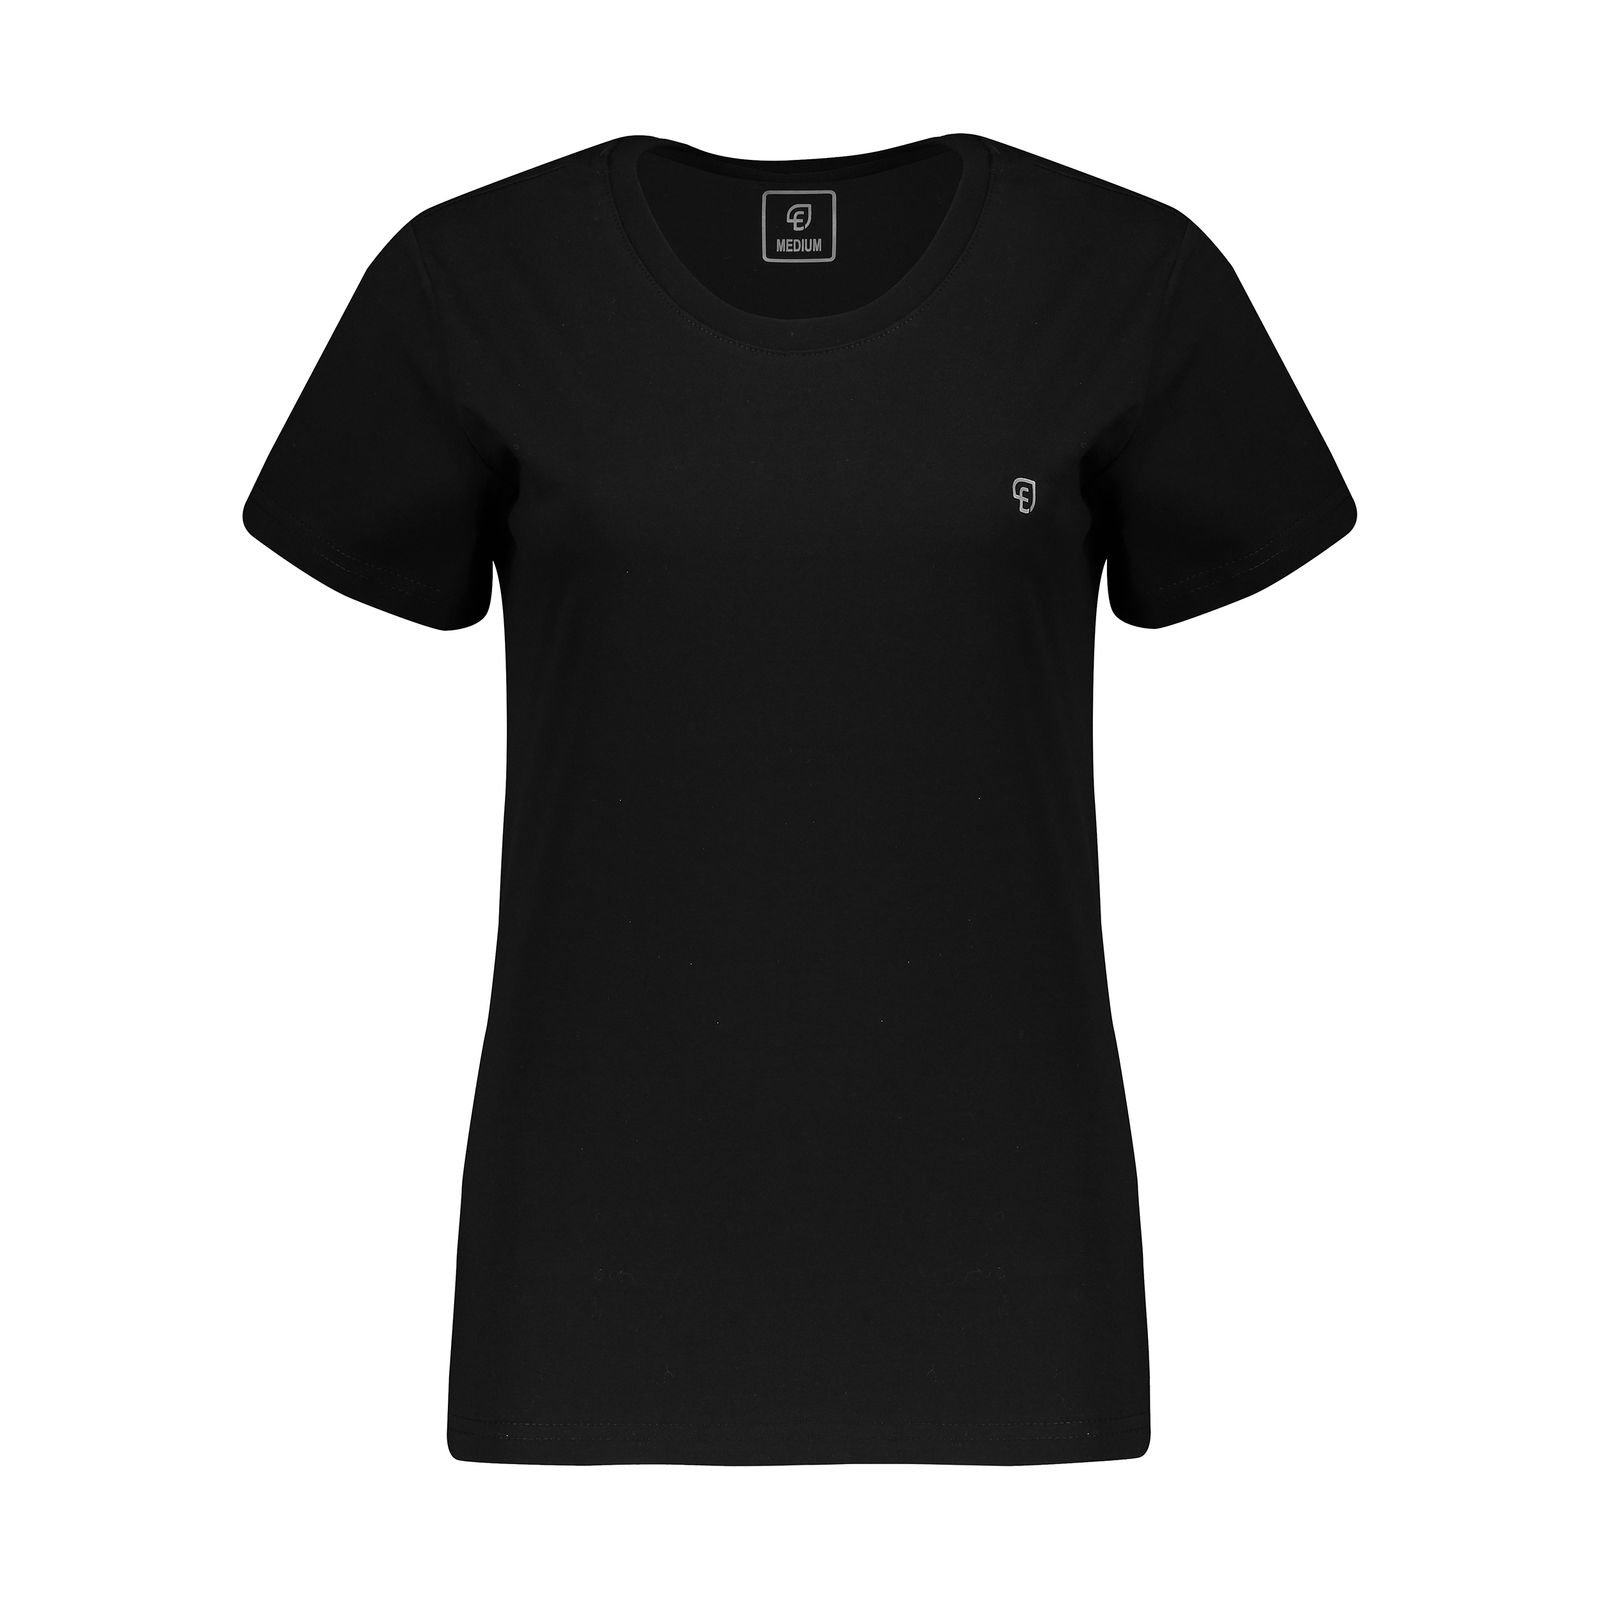 تی شرت آستین کوتاه زنانه الوج مدل W07186-001 -  - 1